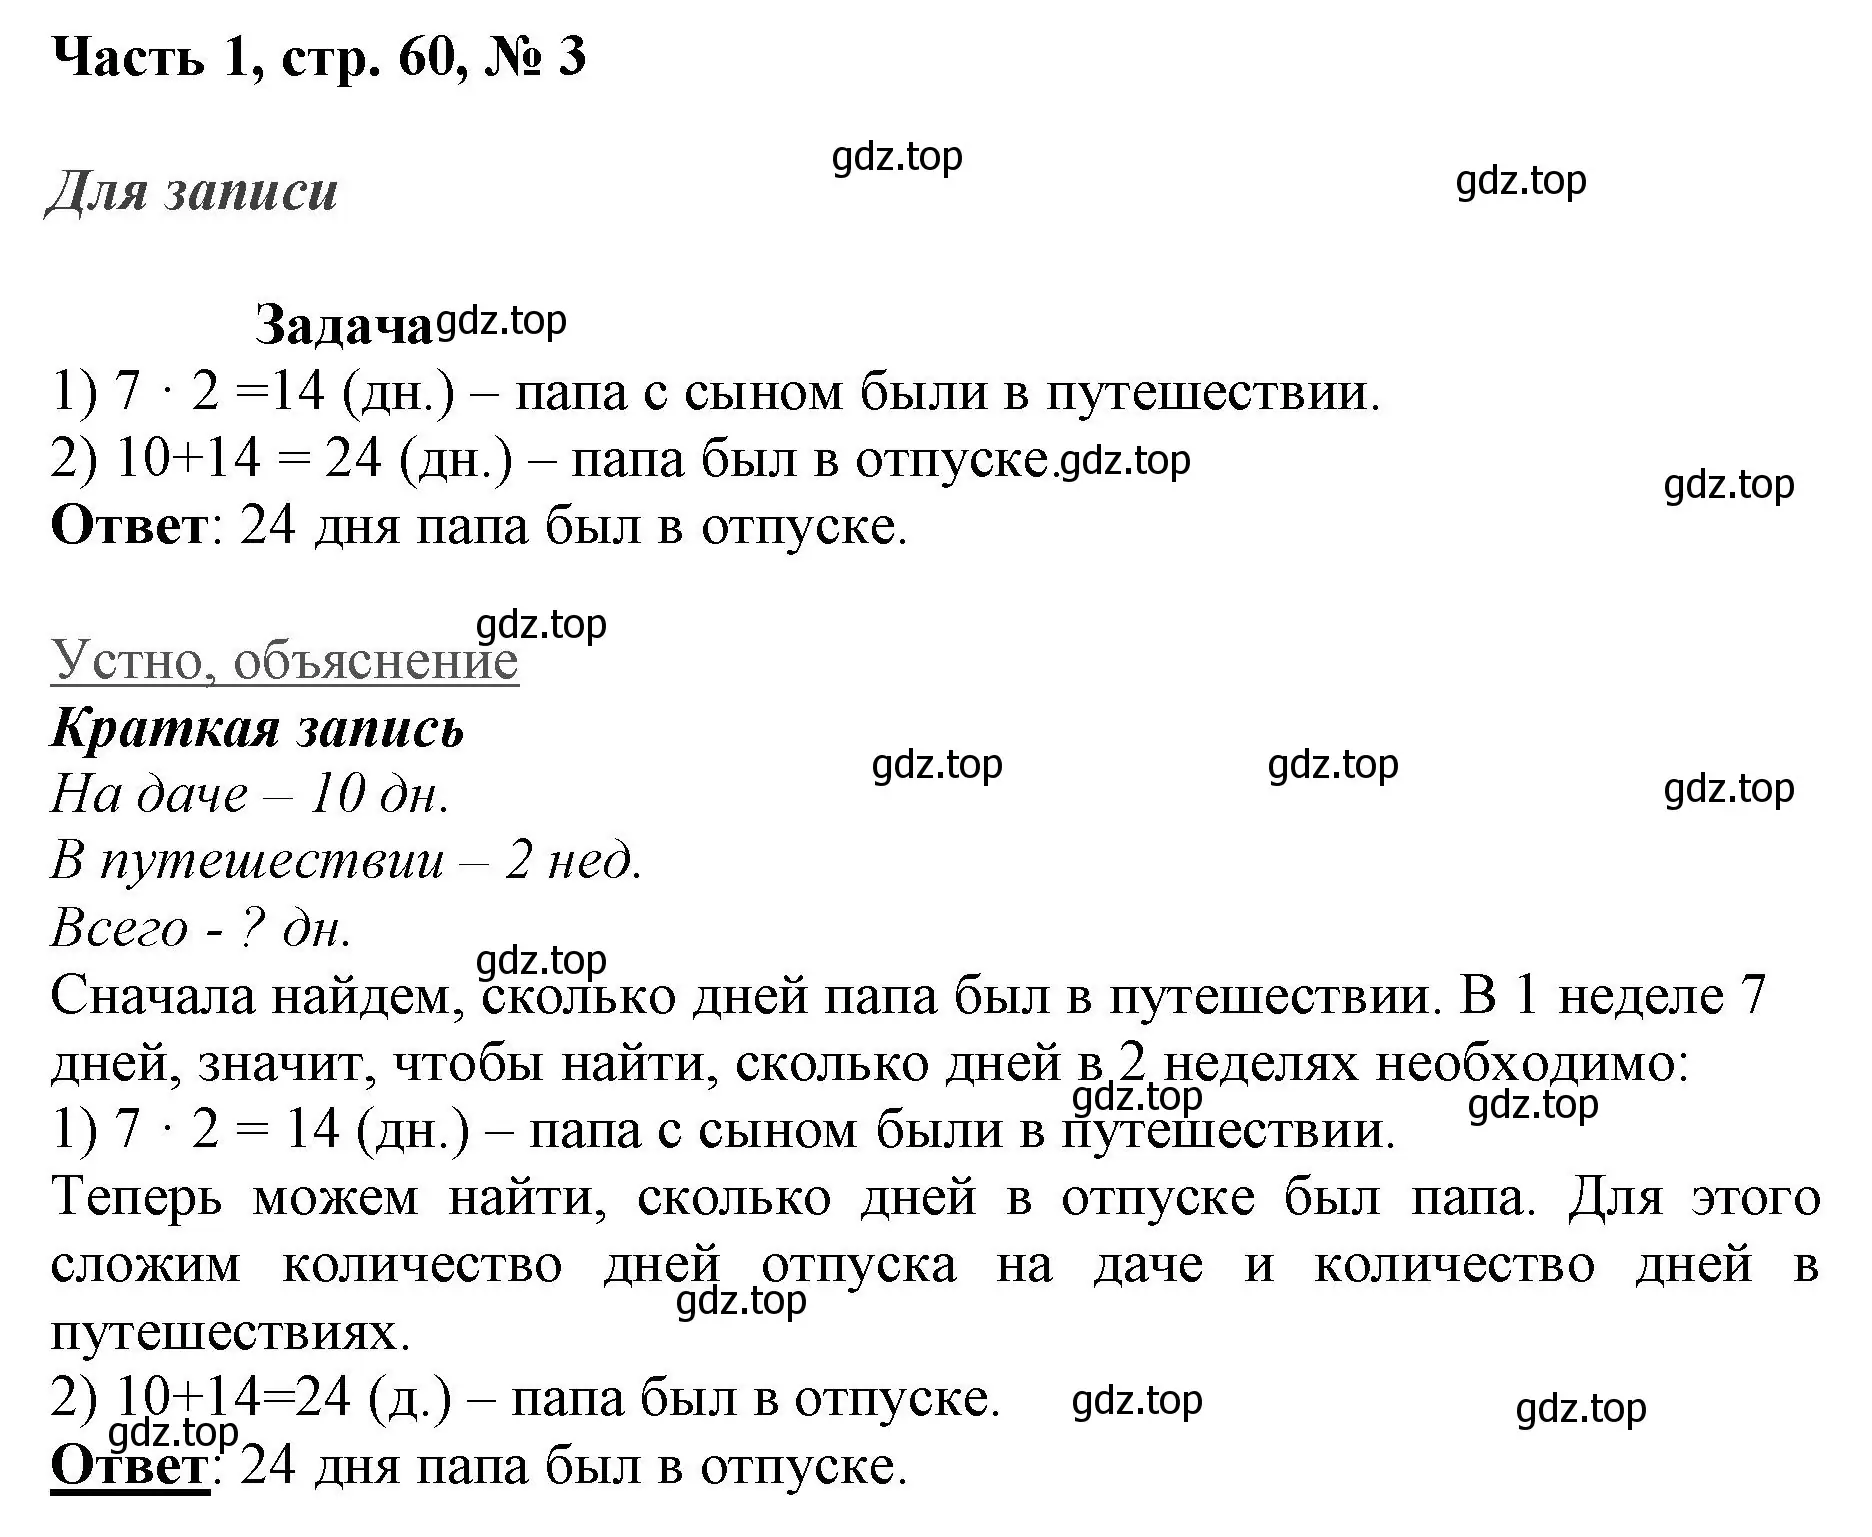 Решение номер 3 (страница 60) гдз по математике 3 класс Моро, Бантова, учебник 1 часть